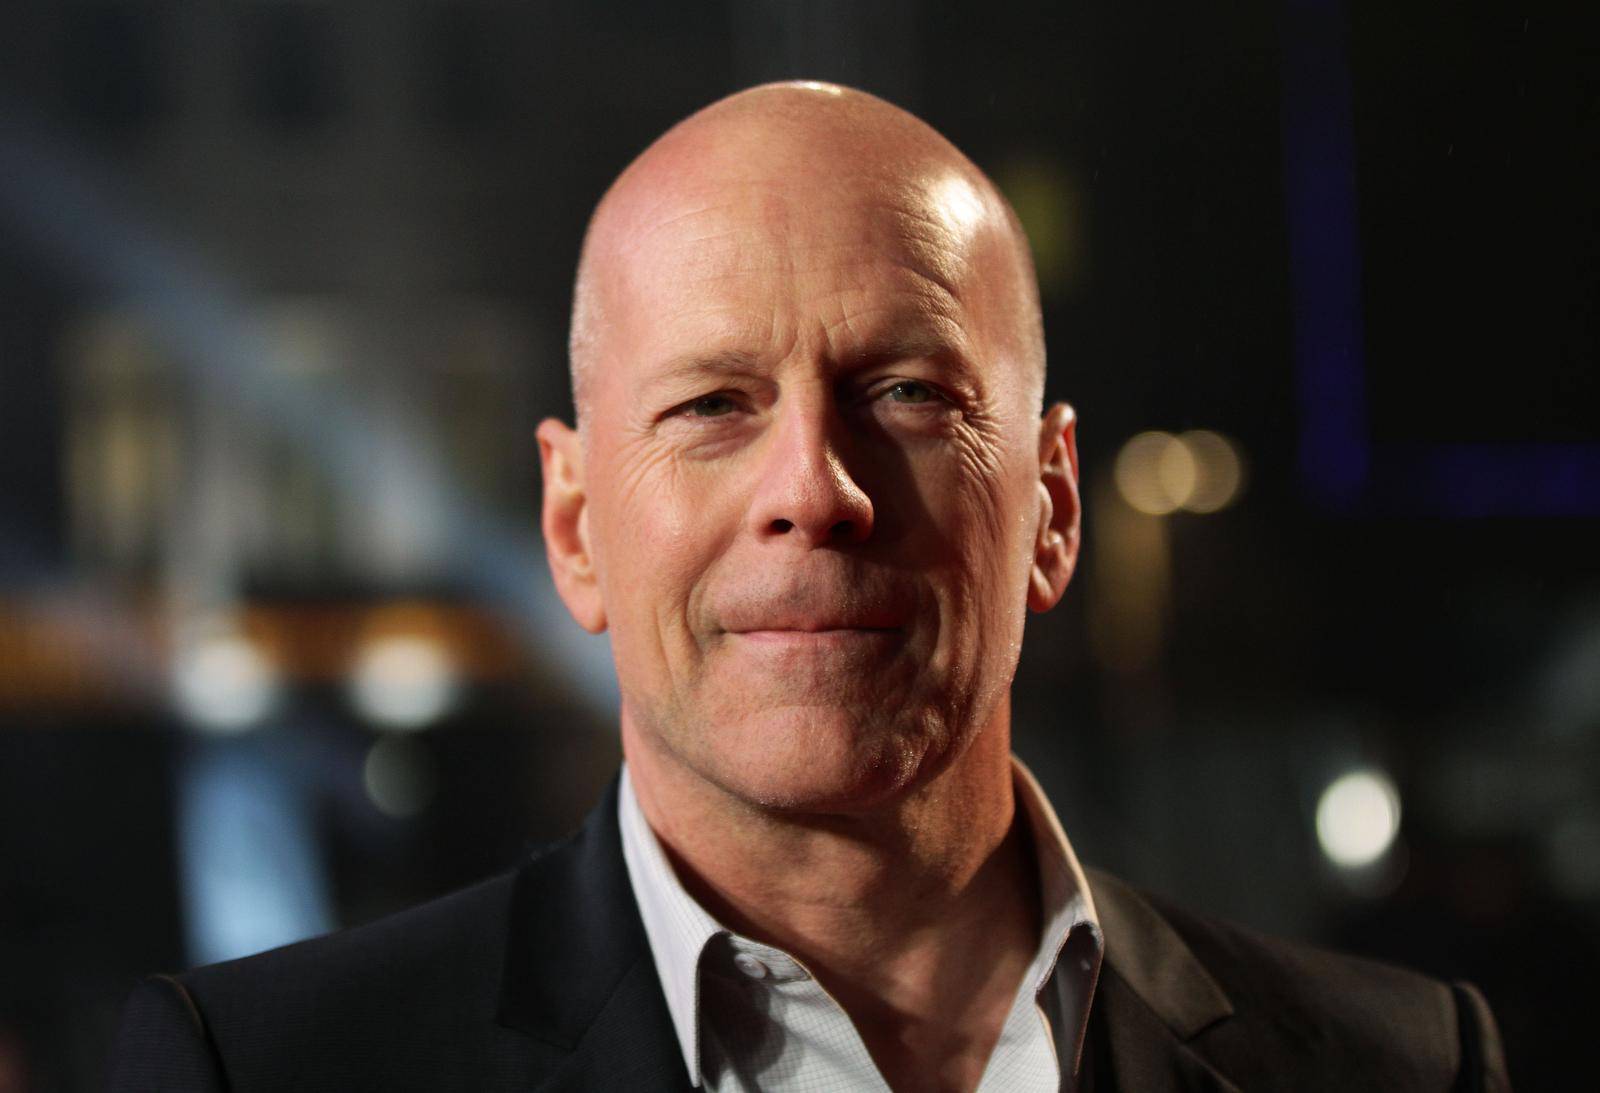 Bruce Willis dementia announcement